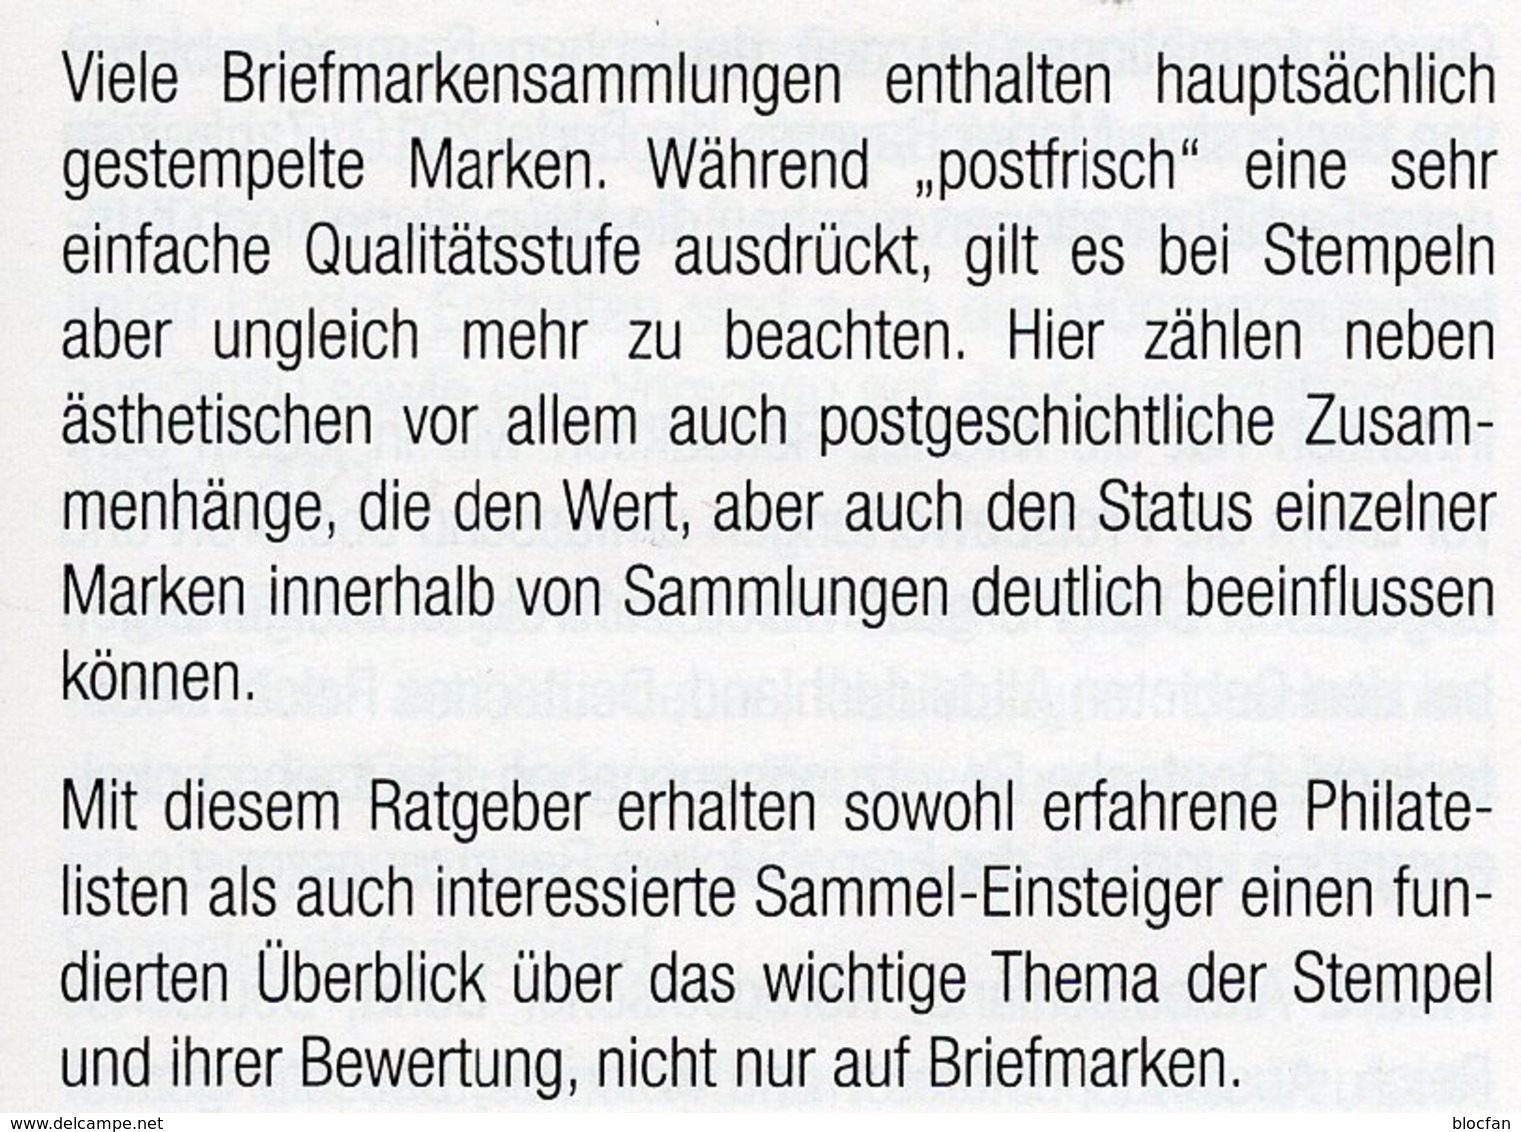 Stempel Verstehen Ratgeber 2020 New 50€ MICHEL Briefmarken Stempelarten Wert Bestimmen Stamps ISBN978 3 95402 252 6 - Filatelie